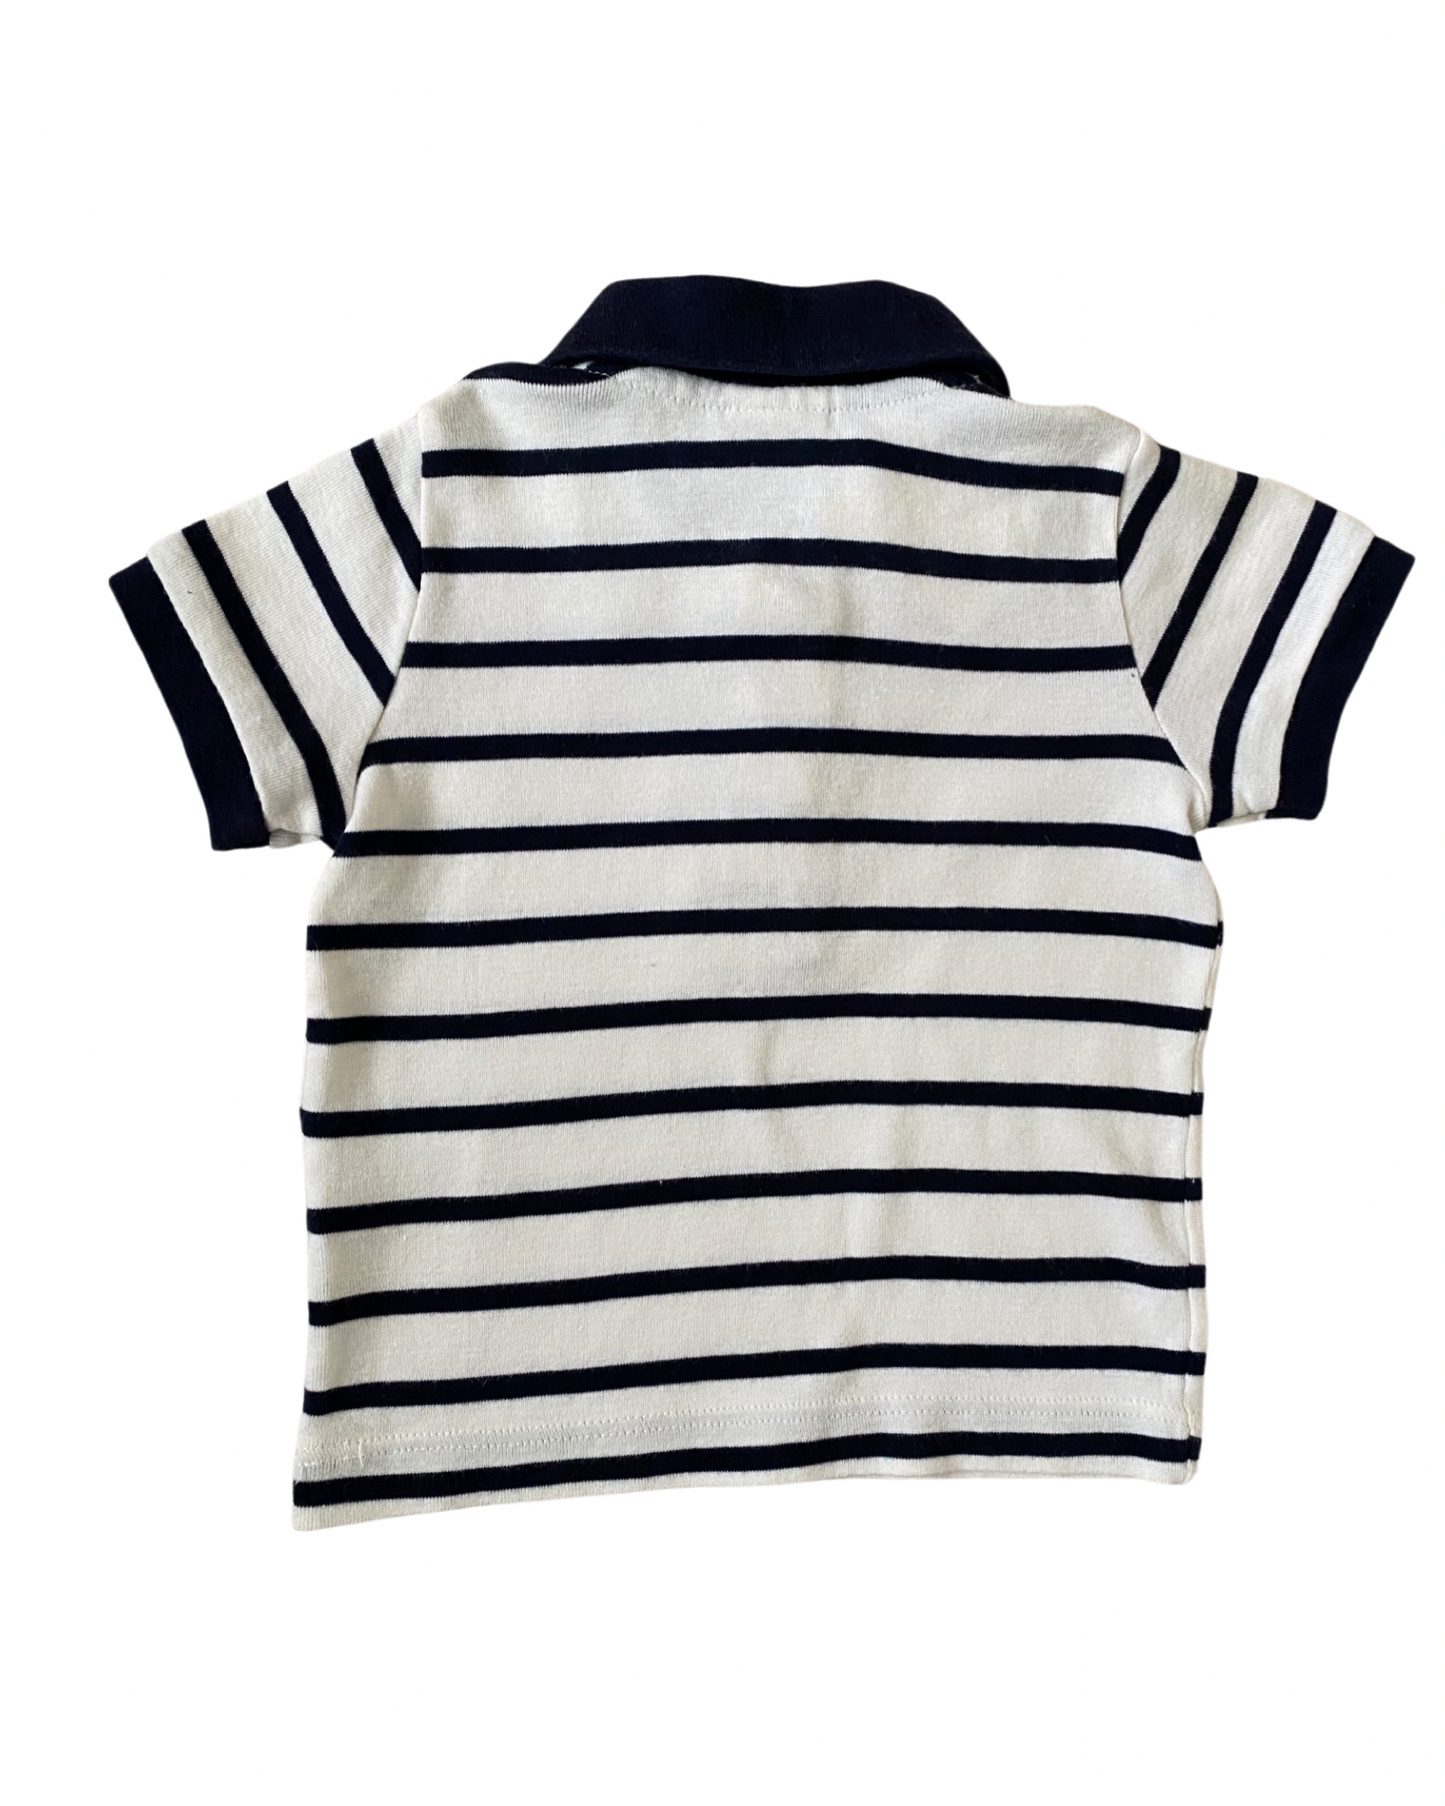 Petit Bateau breton striped polo shirt (size 3-6mths)